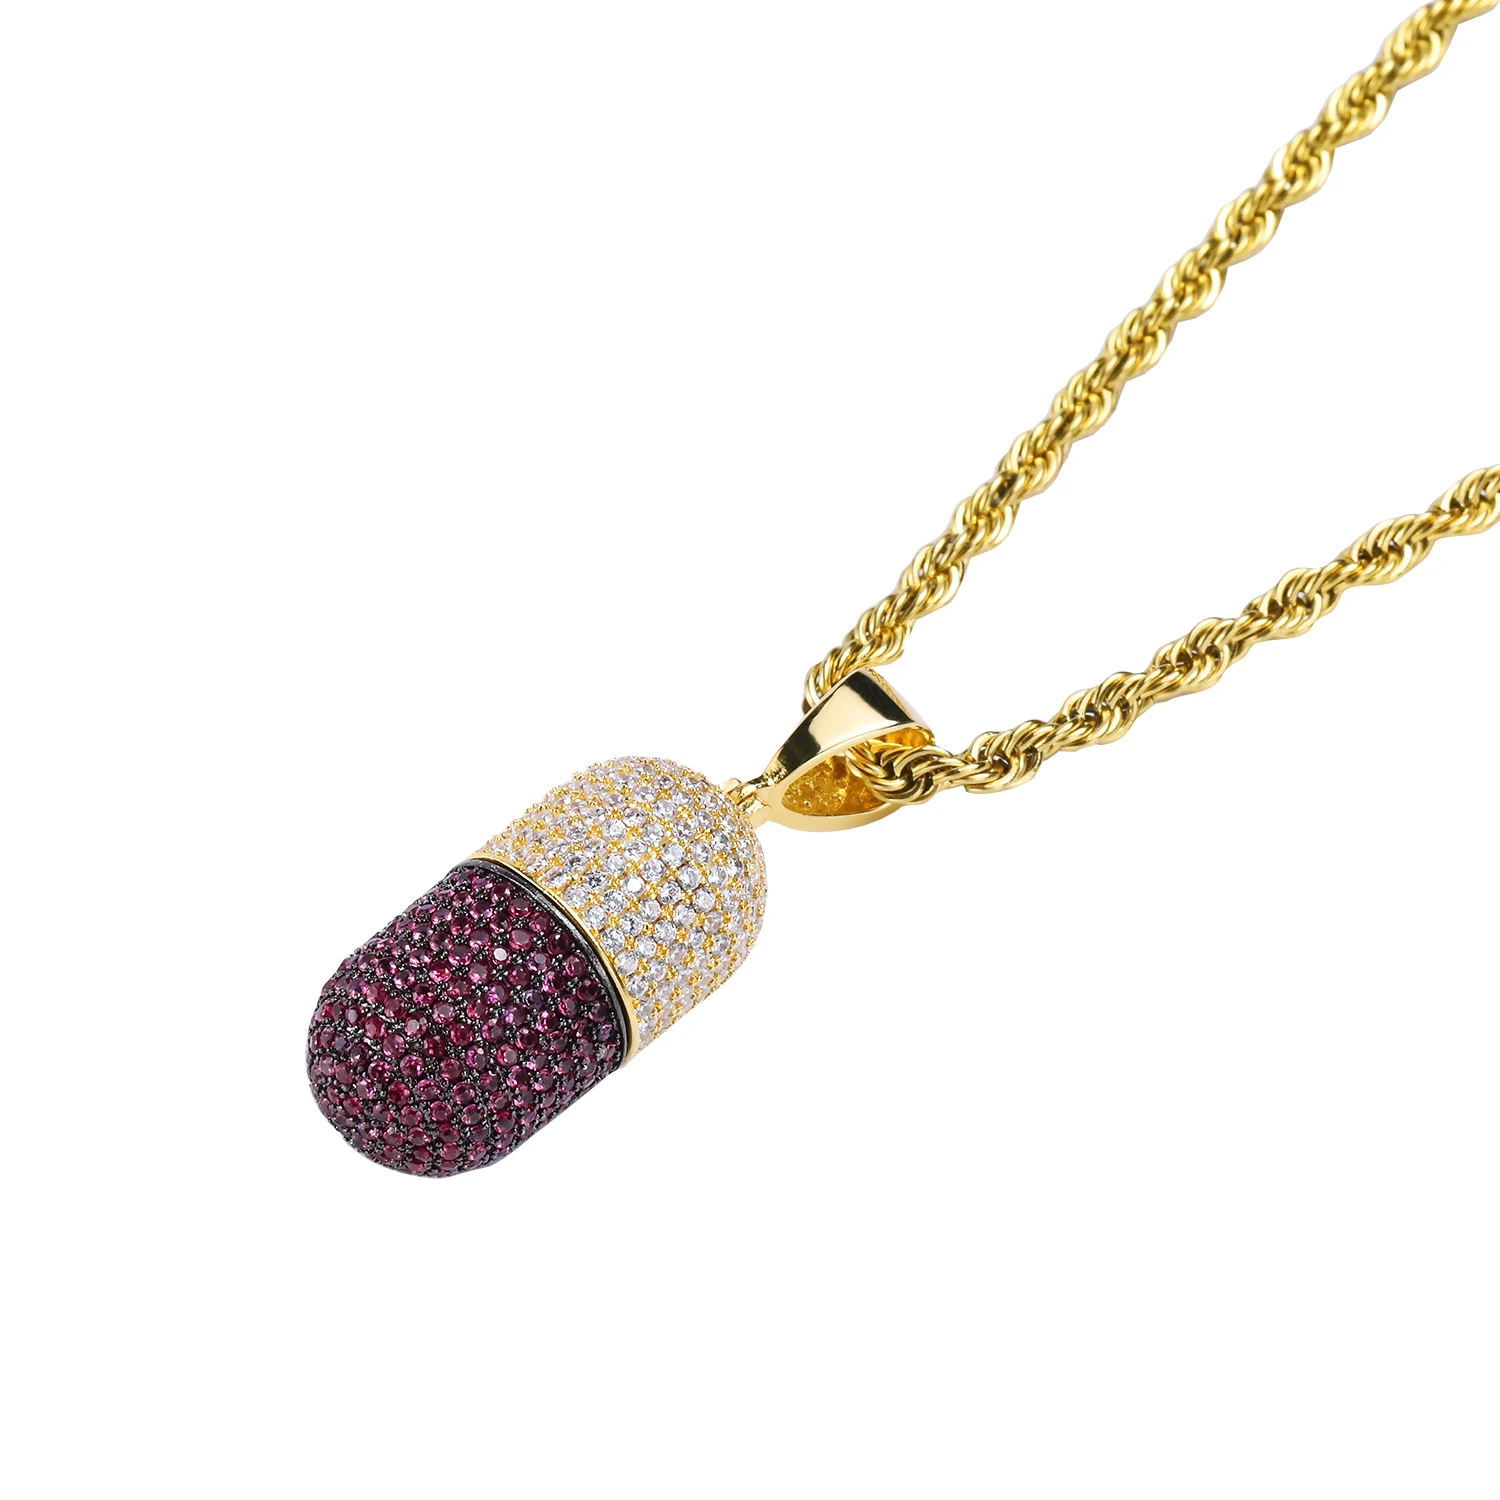 NYUK хип хоп модные ювелирные изделия ожерелье с капсулами можно открыть капсулы кулон кубический циркон медное ожерелье со льдом съемный унисекс